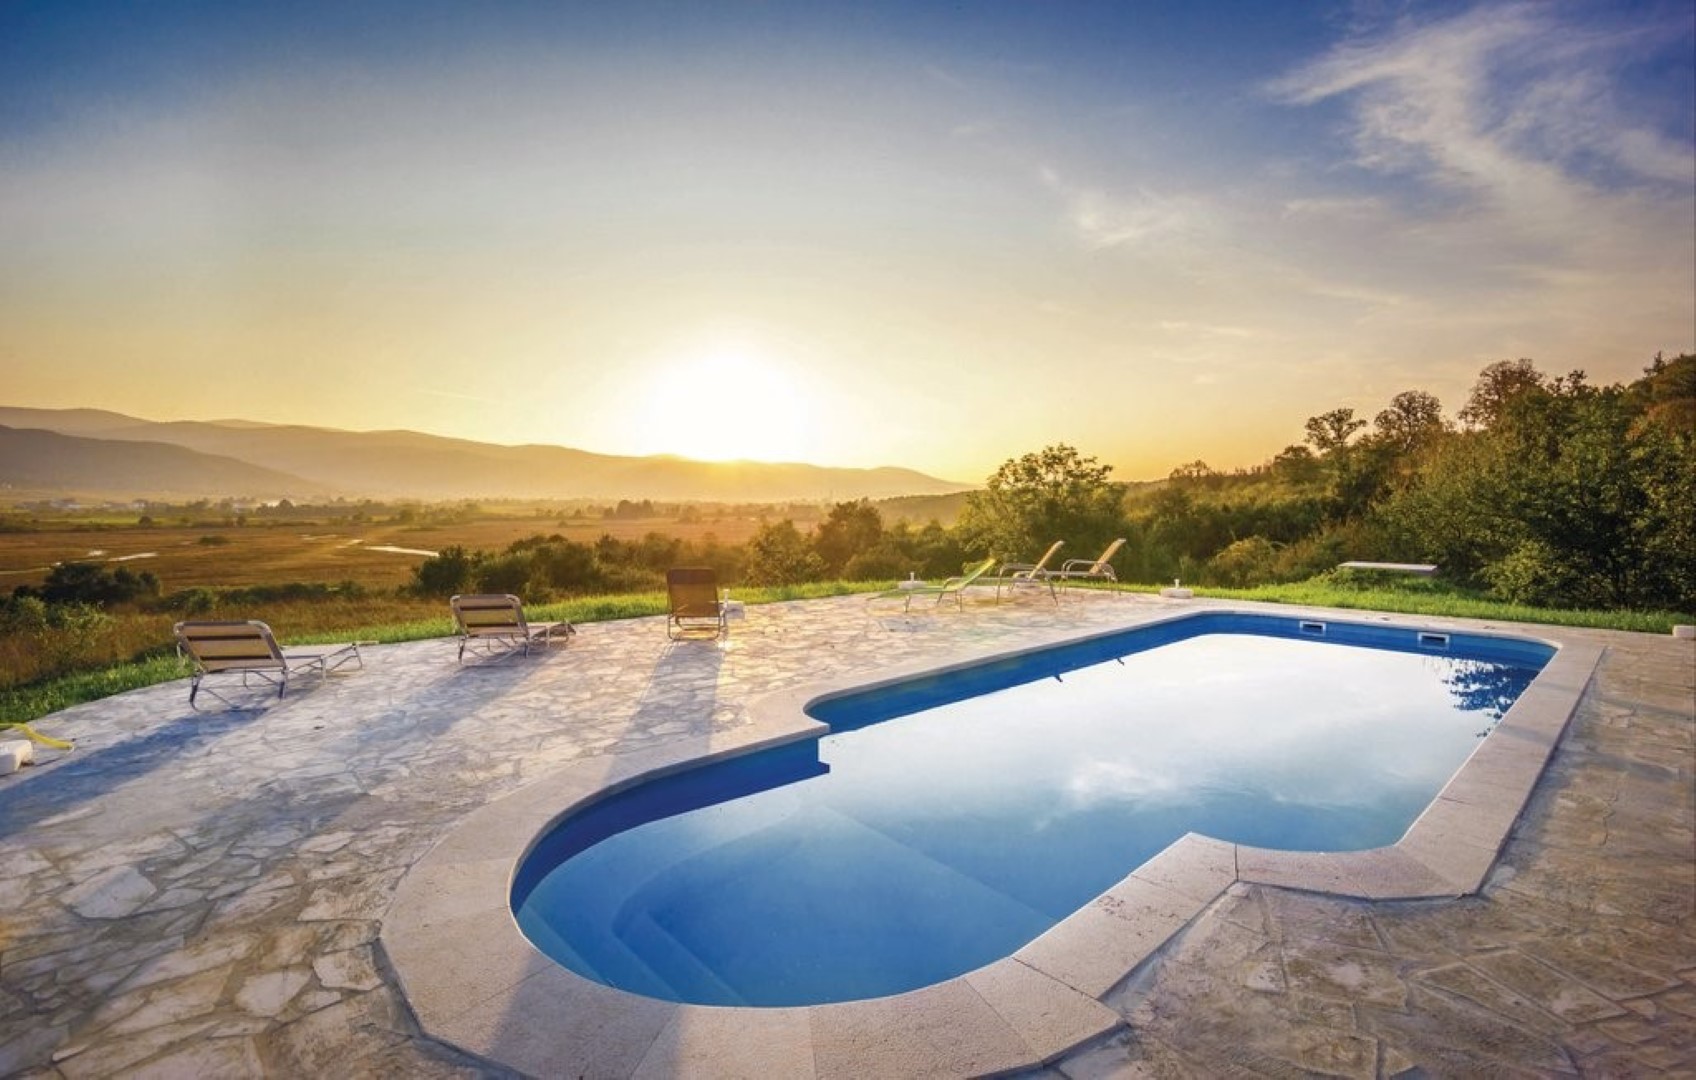  Villa Monte - luxurious retreat: H(12+4) Plaski - Croazia continentale - Croazia